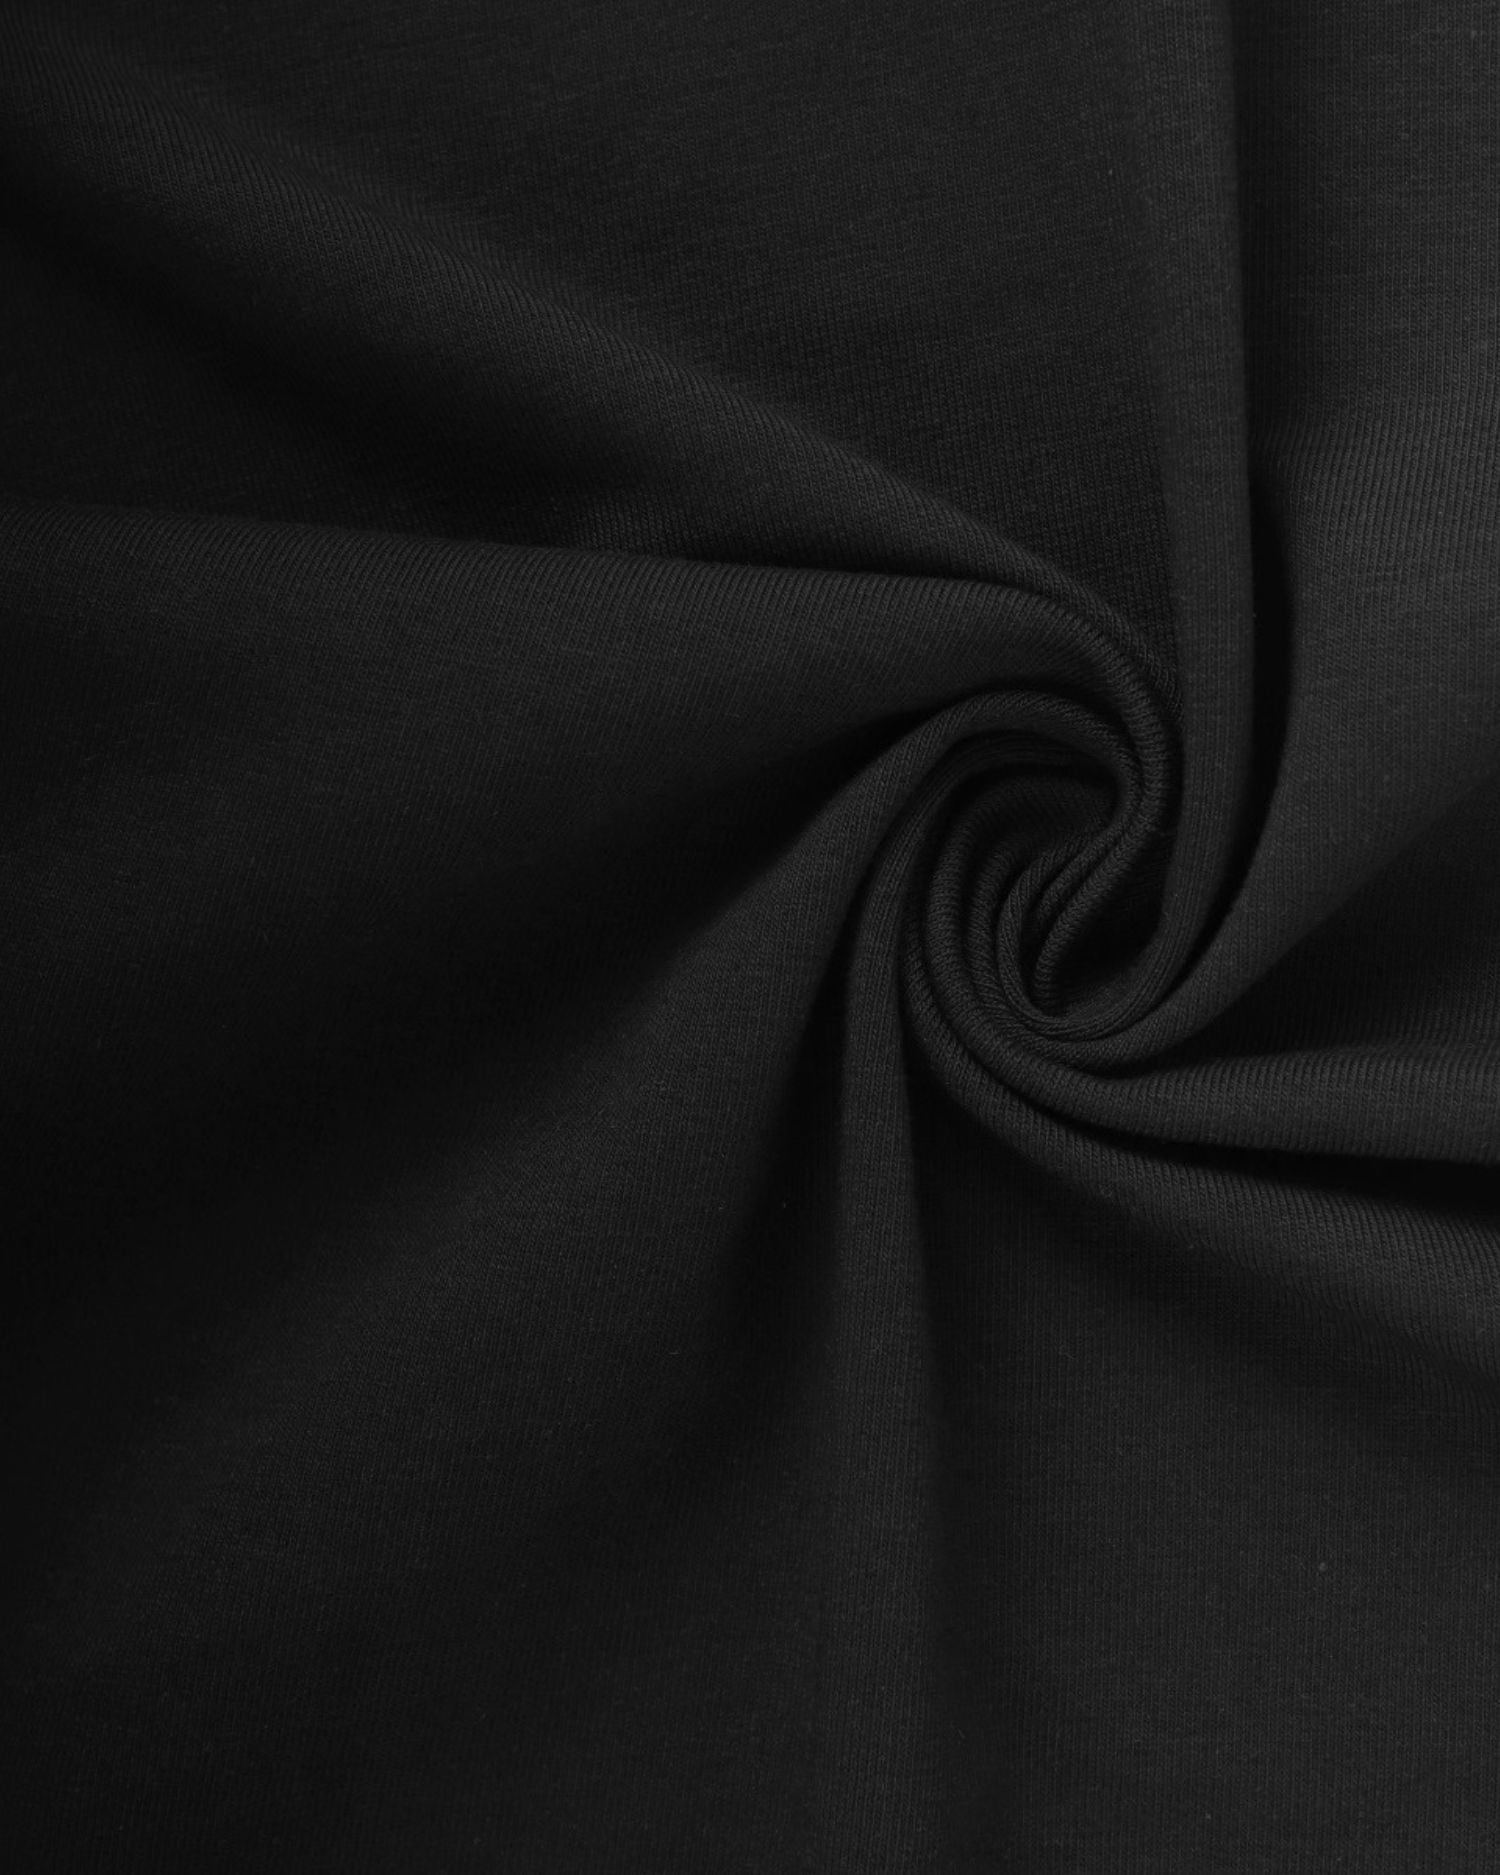 Baumwoll-Jersey mit Elasthan, 1 Meter, 185 g/m2, schwarz